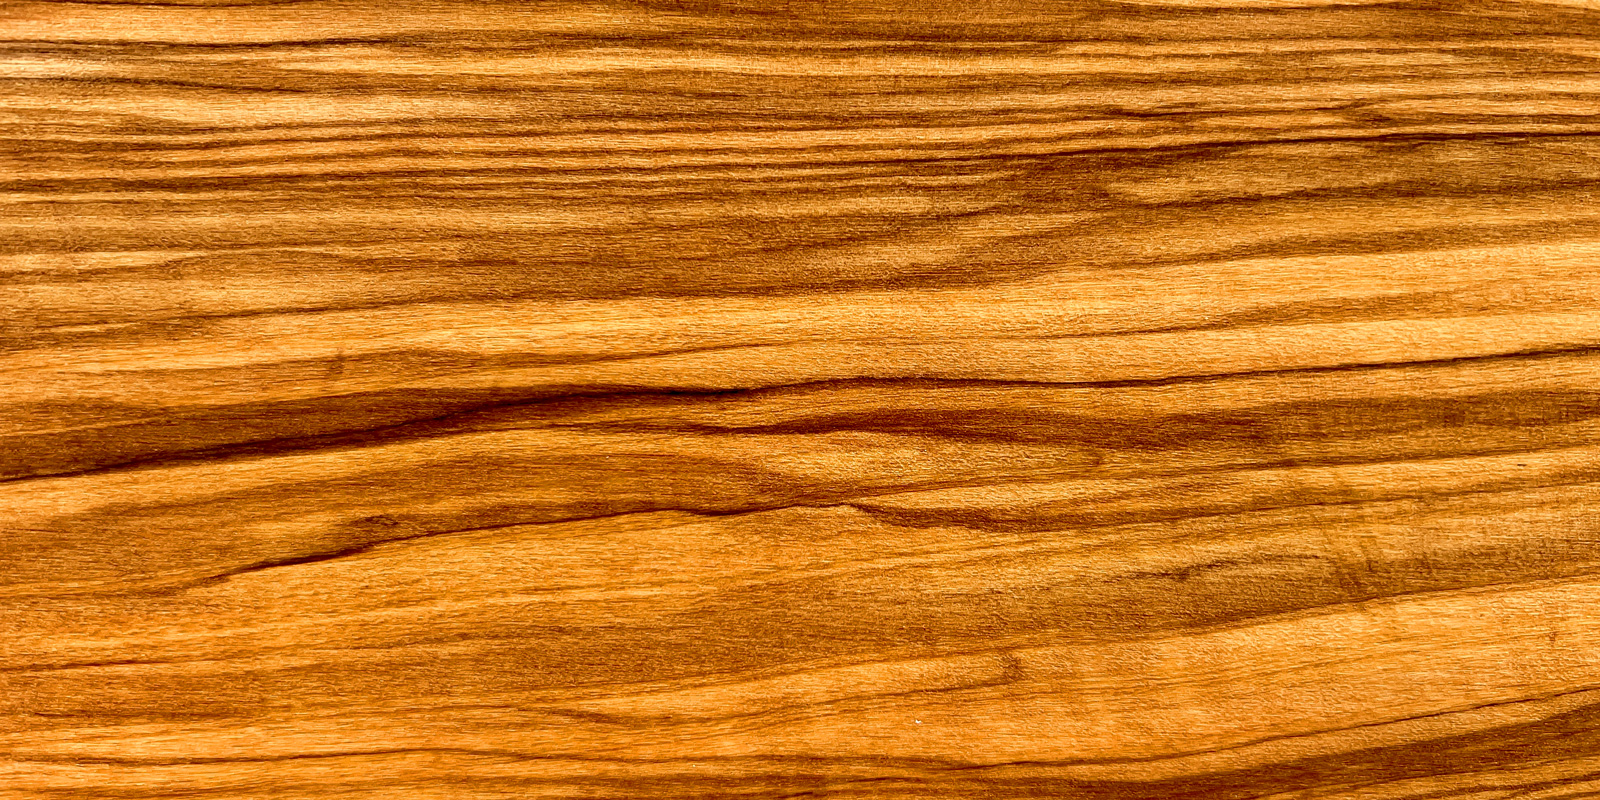 Produits en bois d`olivier Des objets en bois d`olivier magnifiquement veine qui apportent une tonalite chaleureuse a la table.